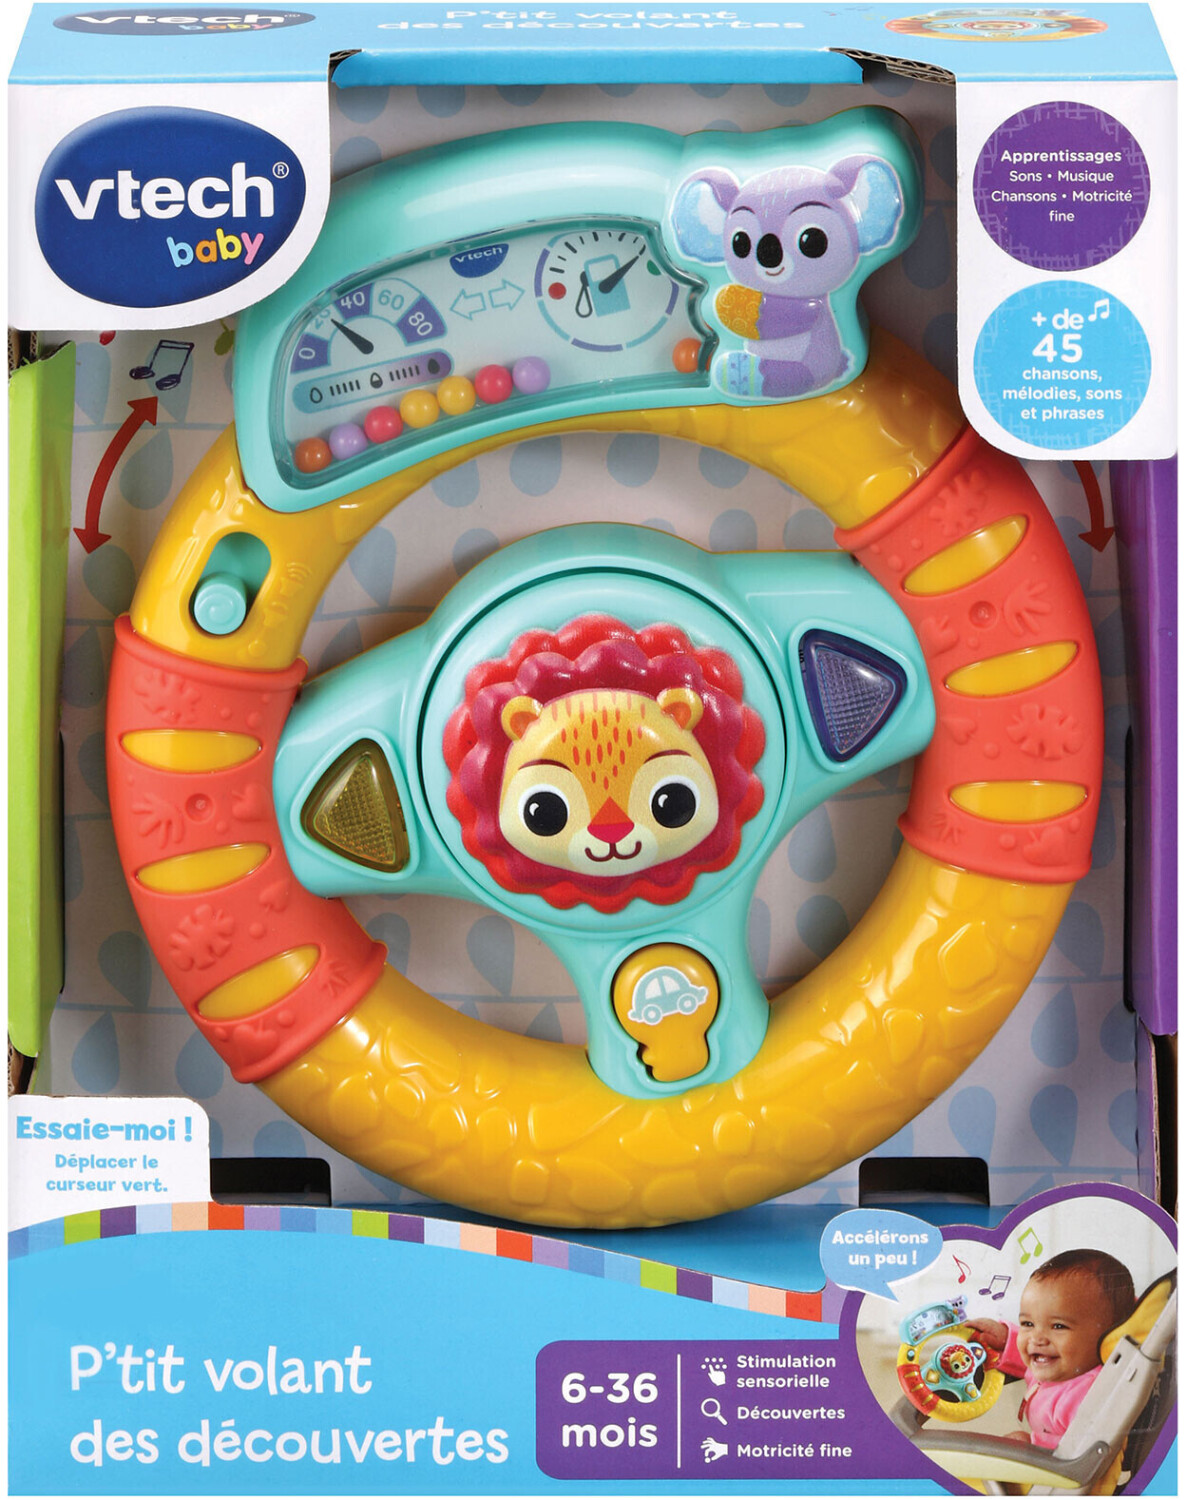 Jouet interactif Vtech Baby console des découvertes - Autres jeux